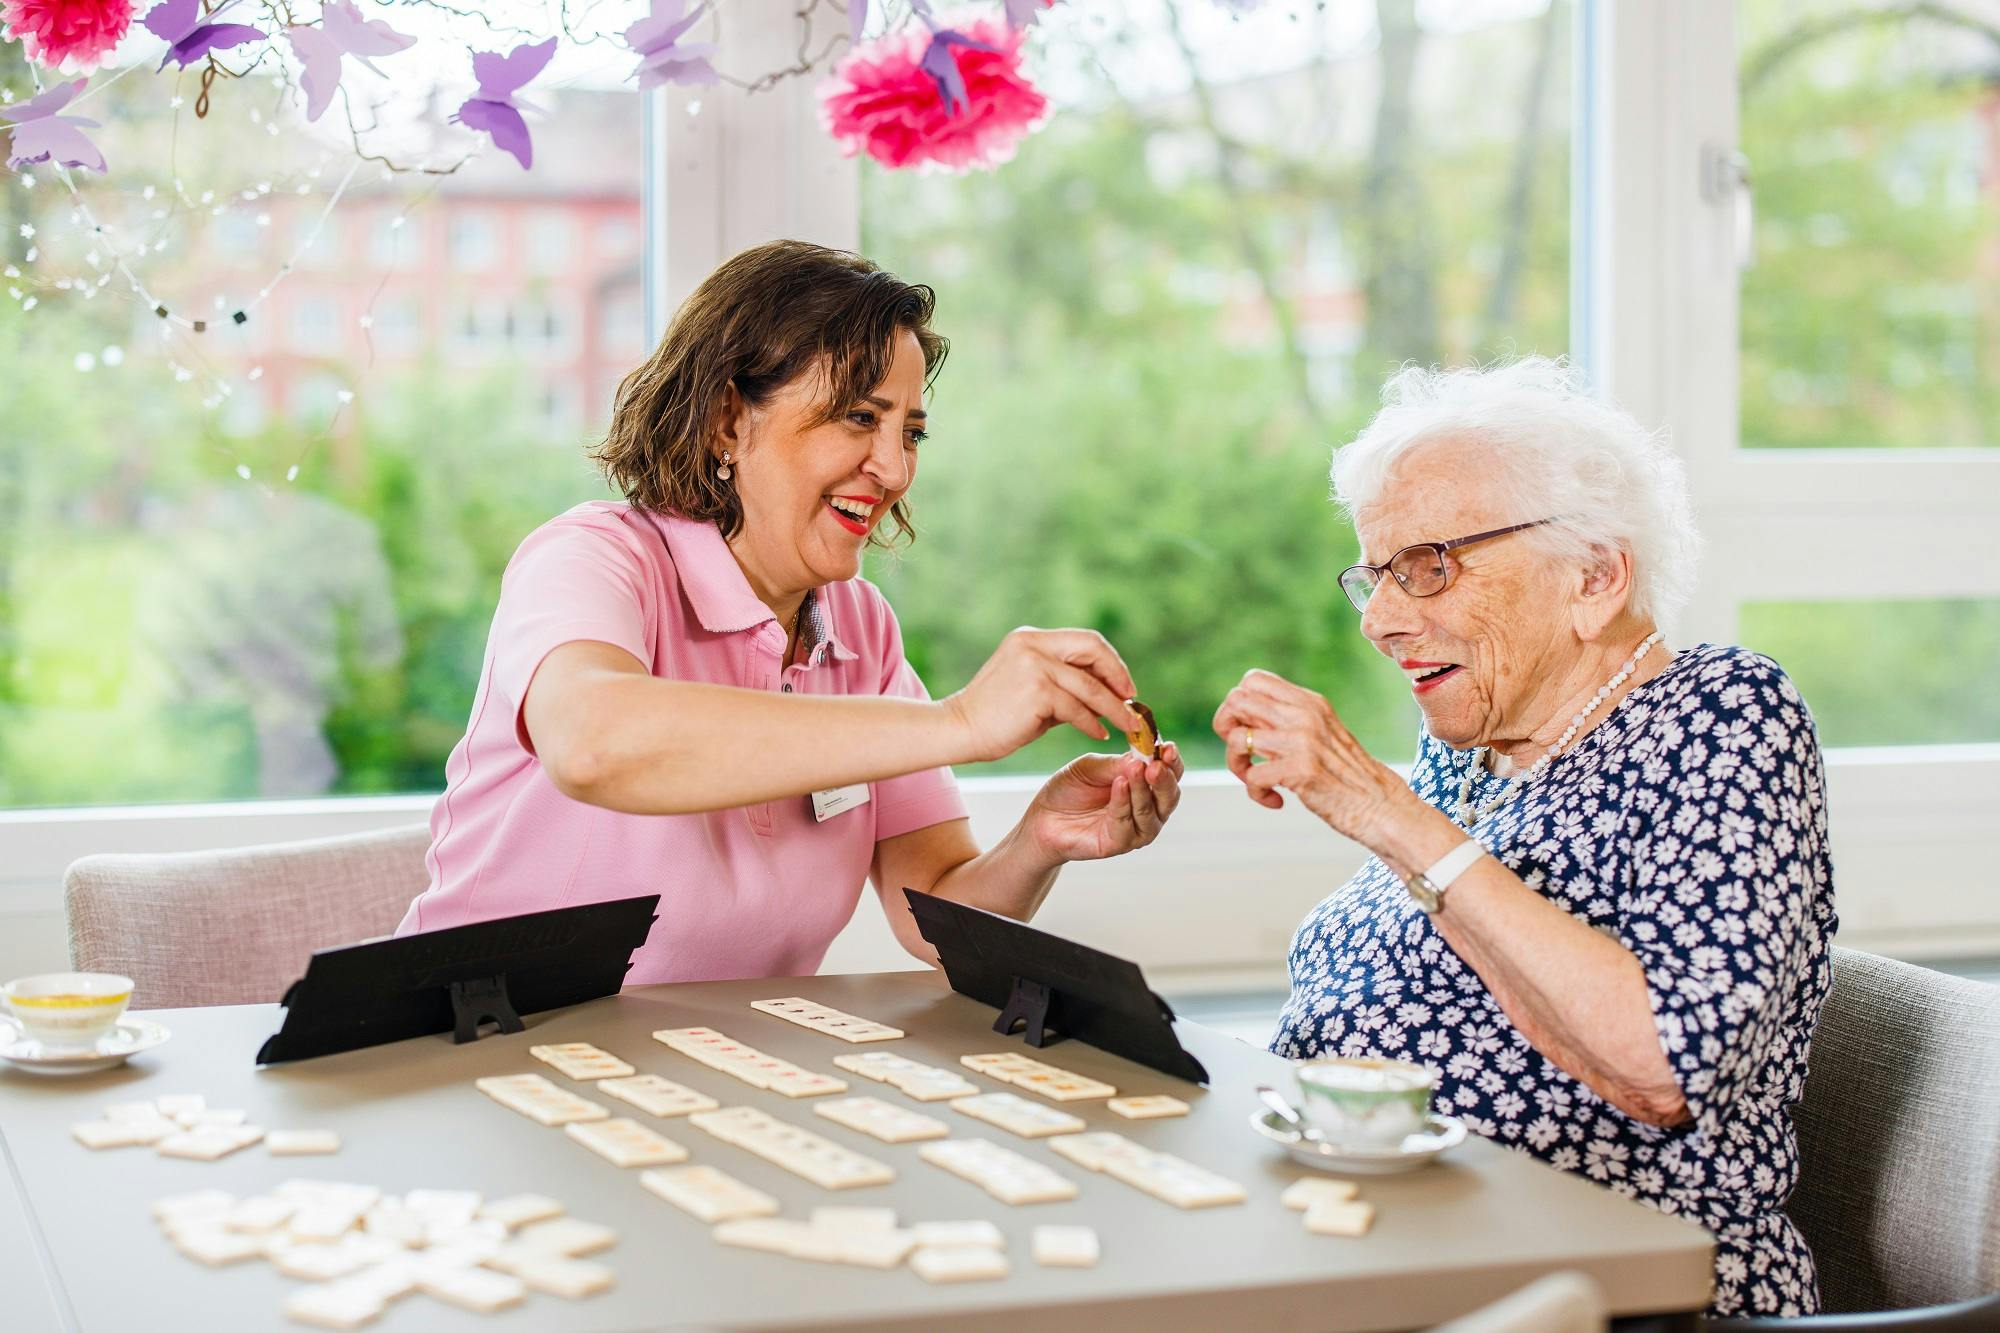 Pflegekraft spielt lachend mit Seniorin Domino in einem hellen Raum.